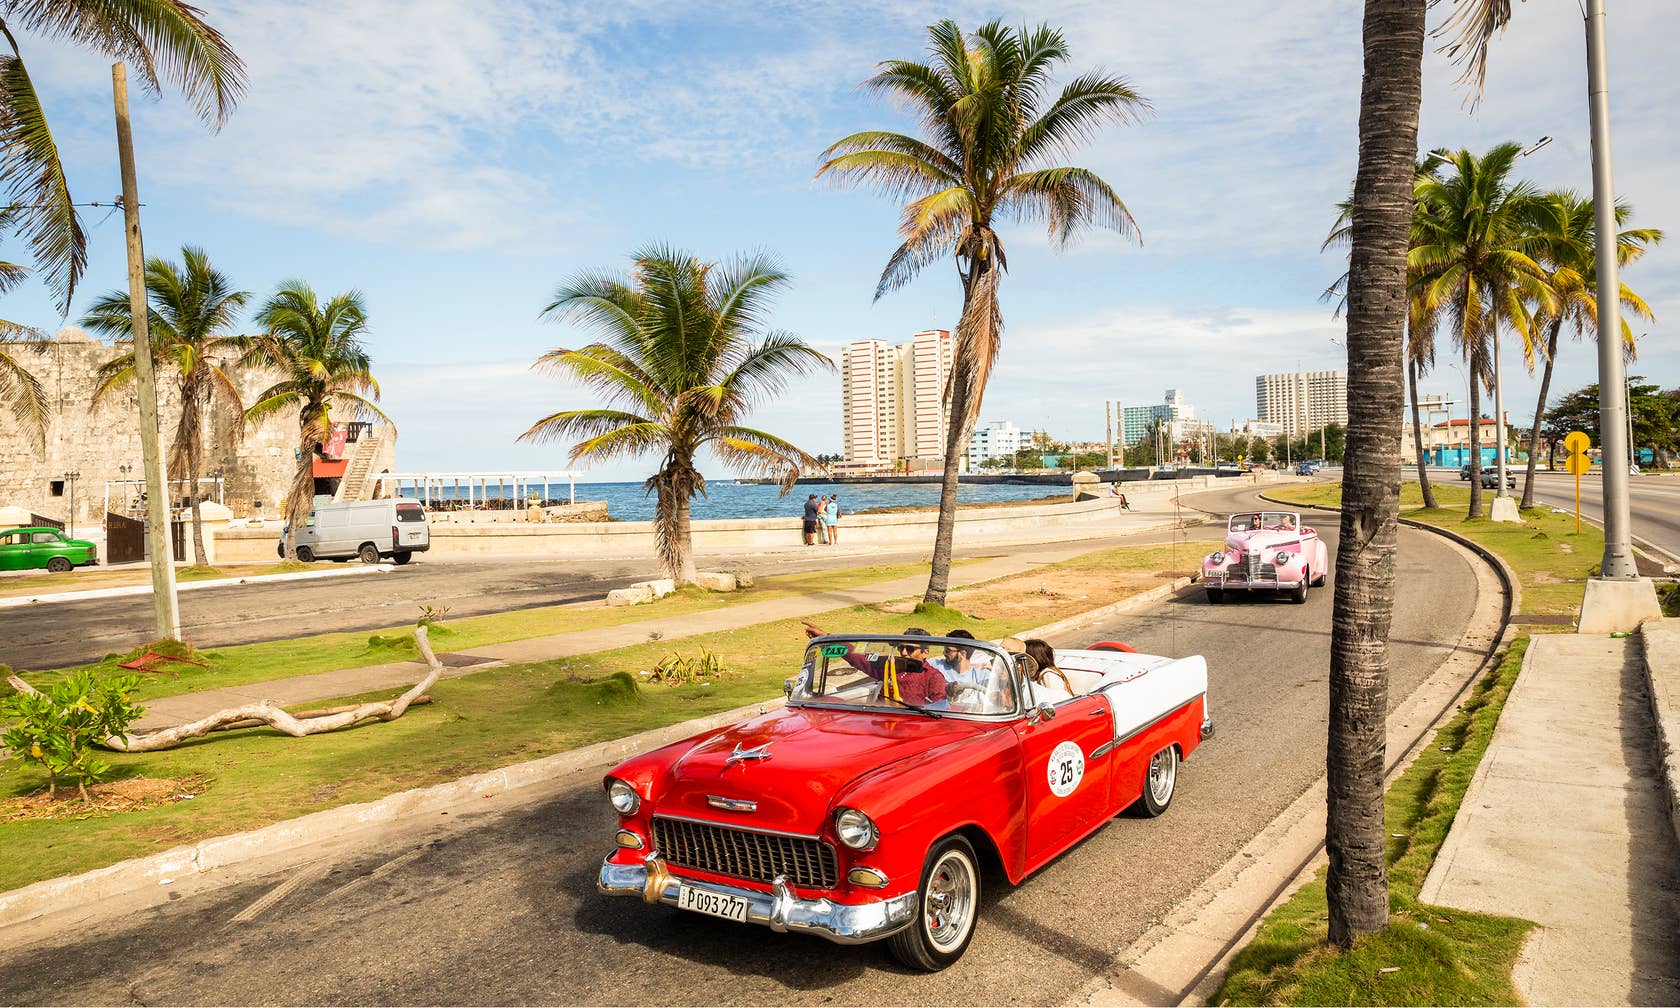 Vakantieverhuur in Cuba